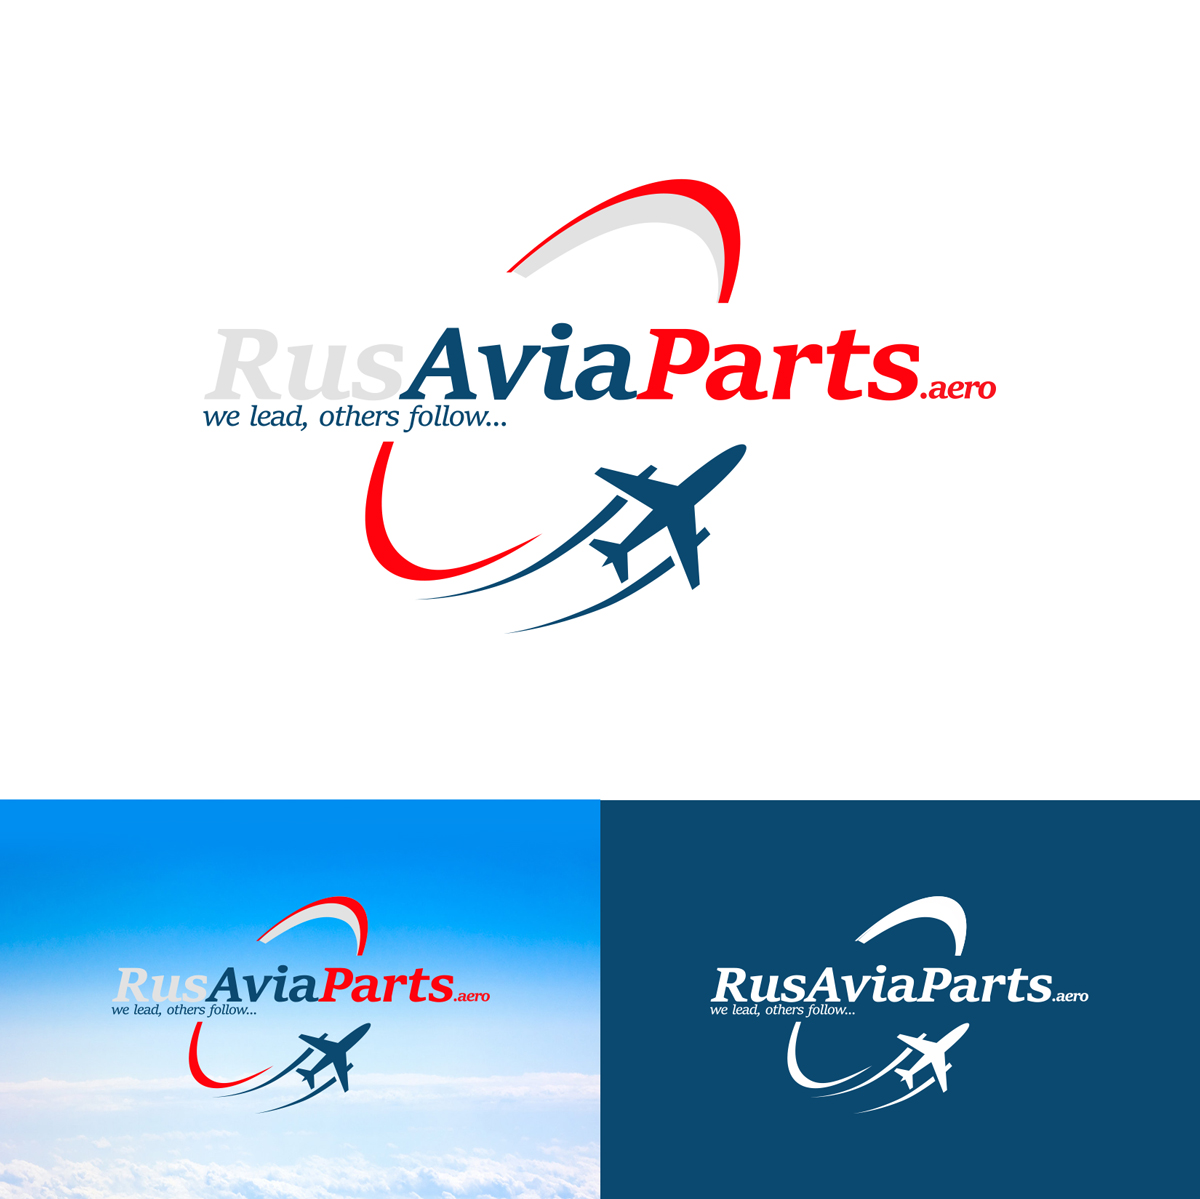 Создание логотипа и фирменного стиля для авиационной компании